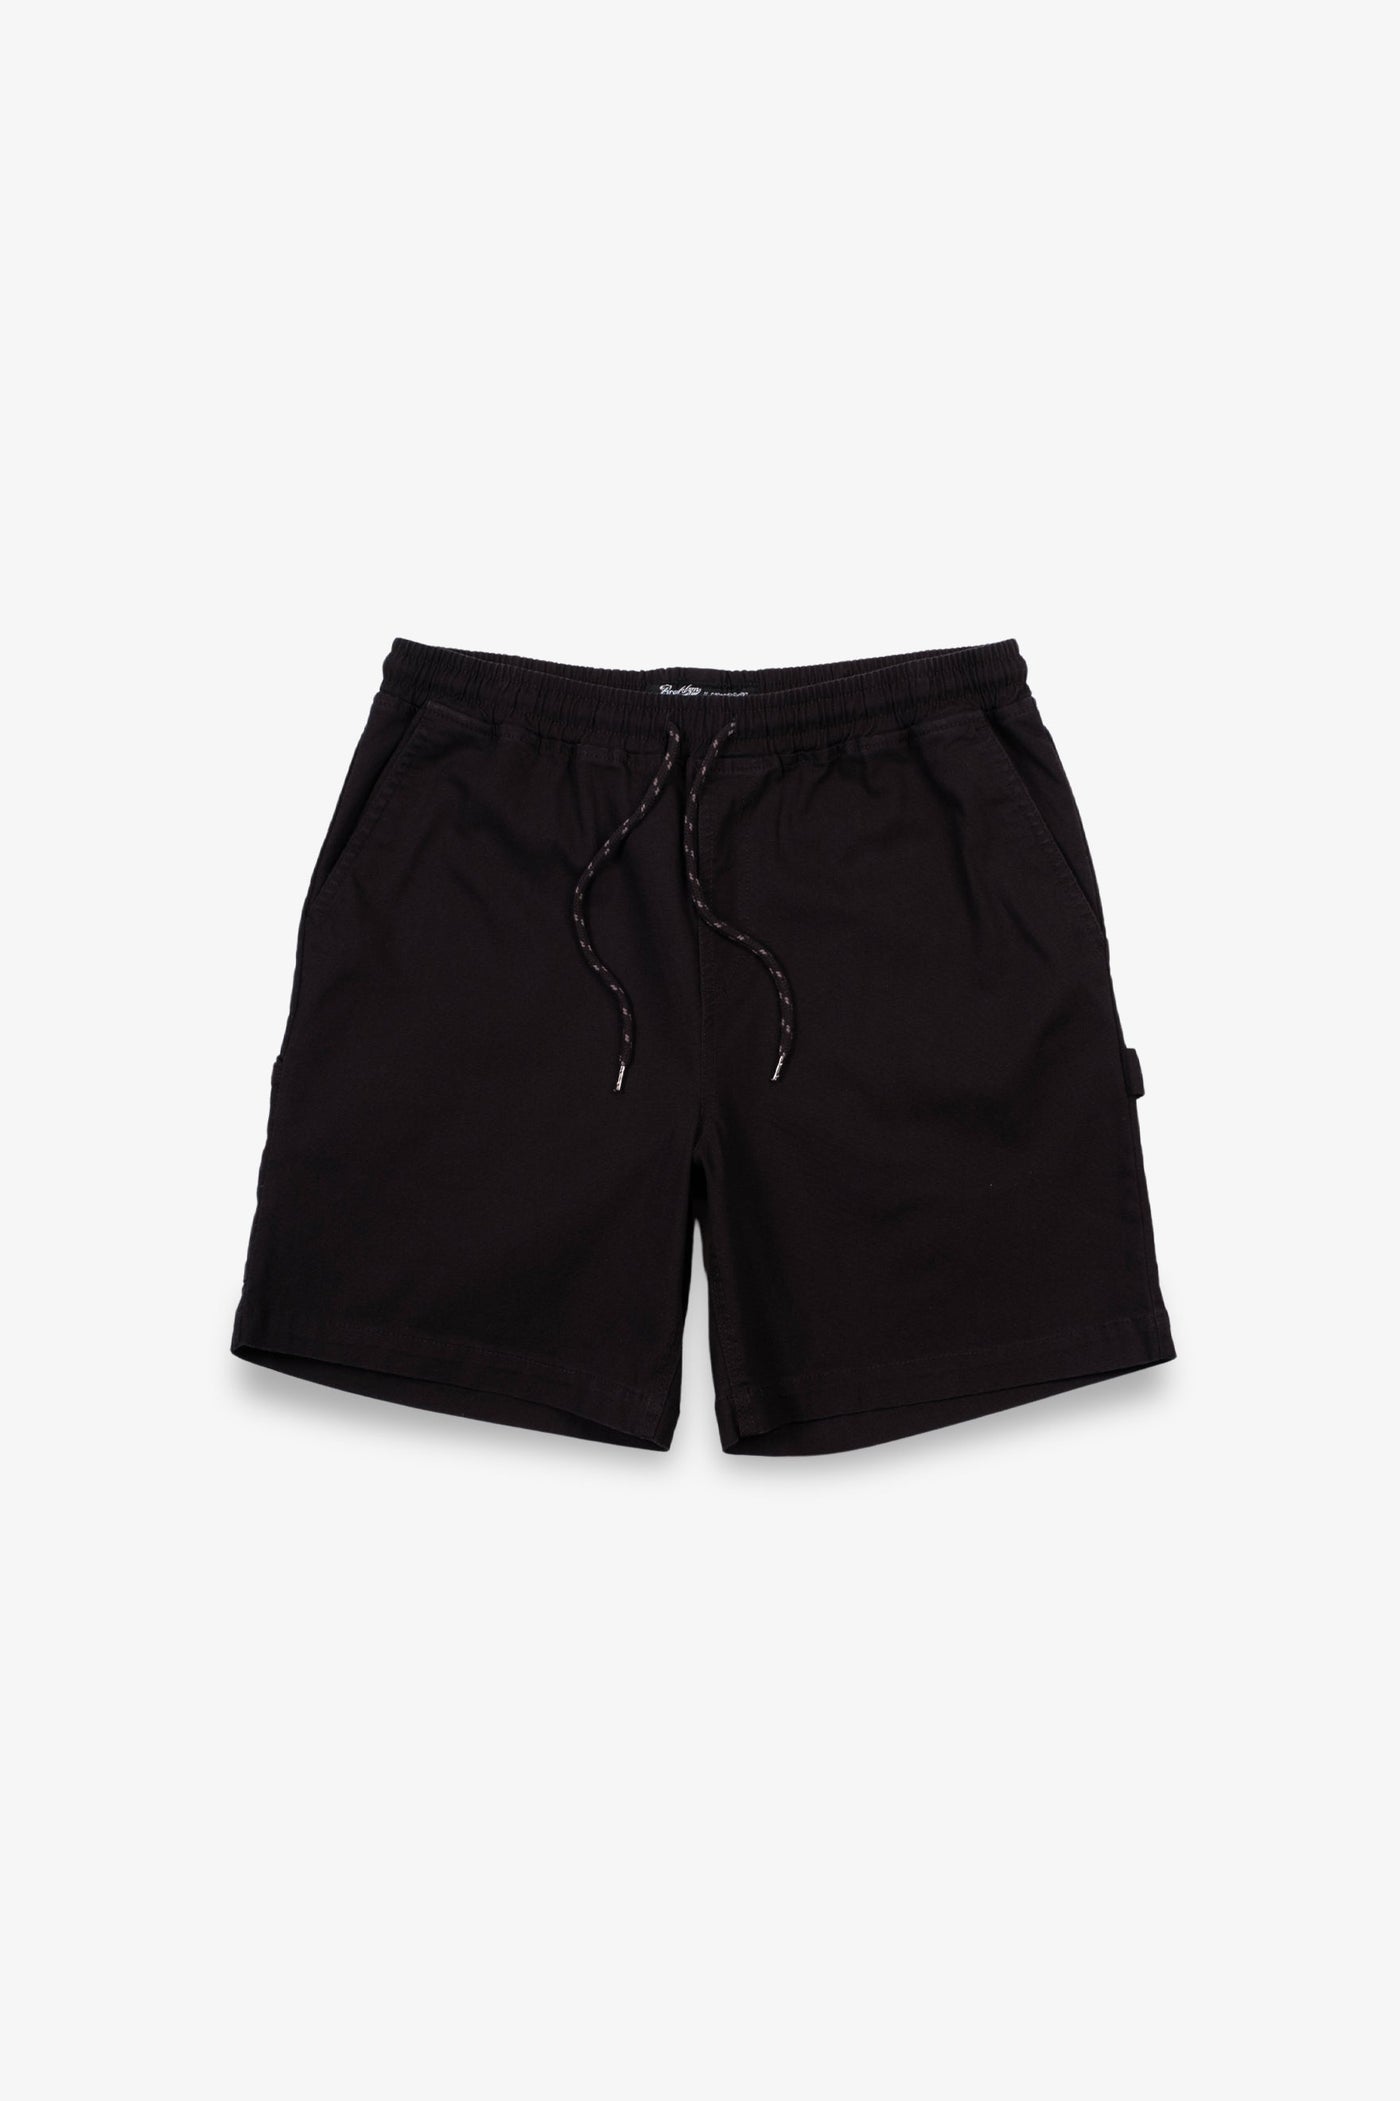 Men's Shorts | Men's Cargo Shorts | Brooklyn Cloth